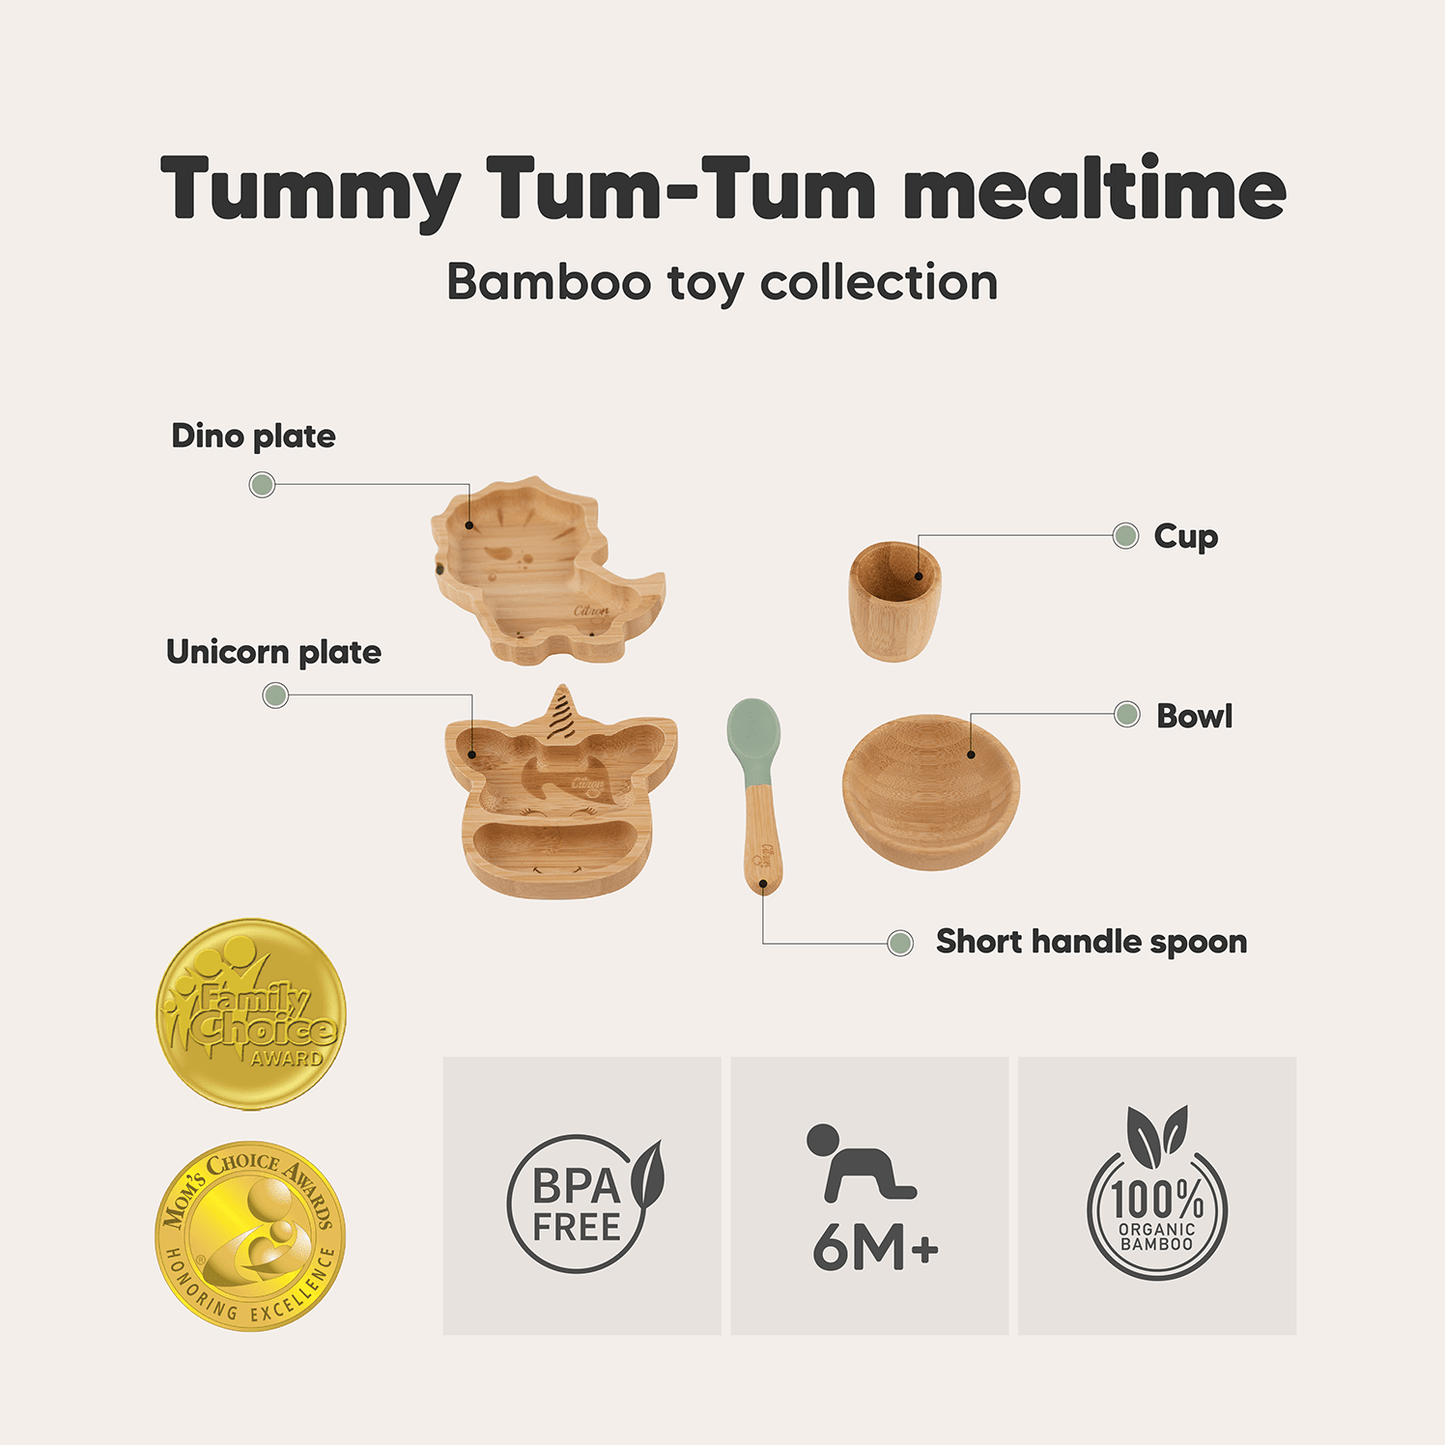 مجموعة ألعاب Tummy Tum-Tum Bamboo - أطباق / وعاء / كوب